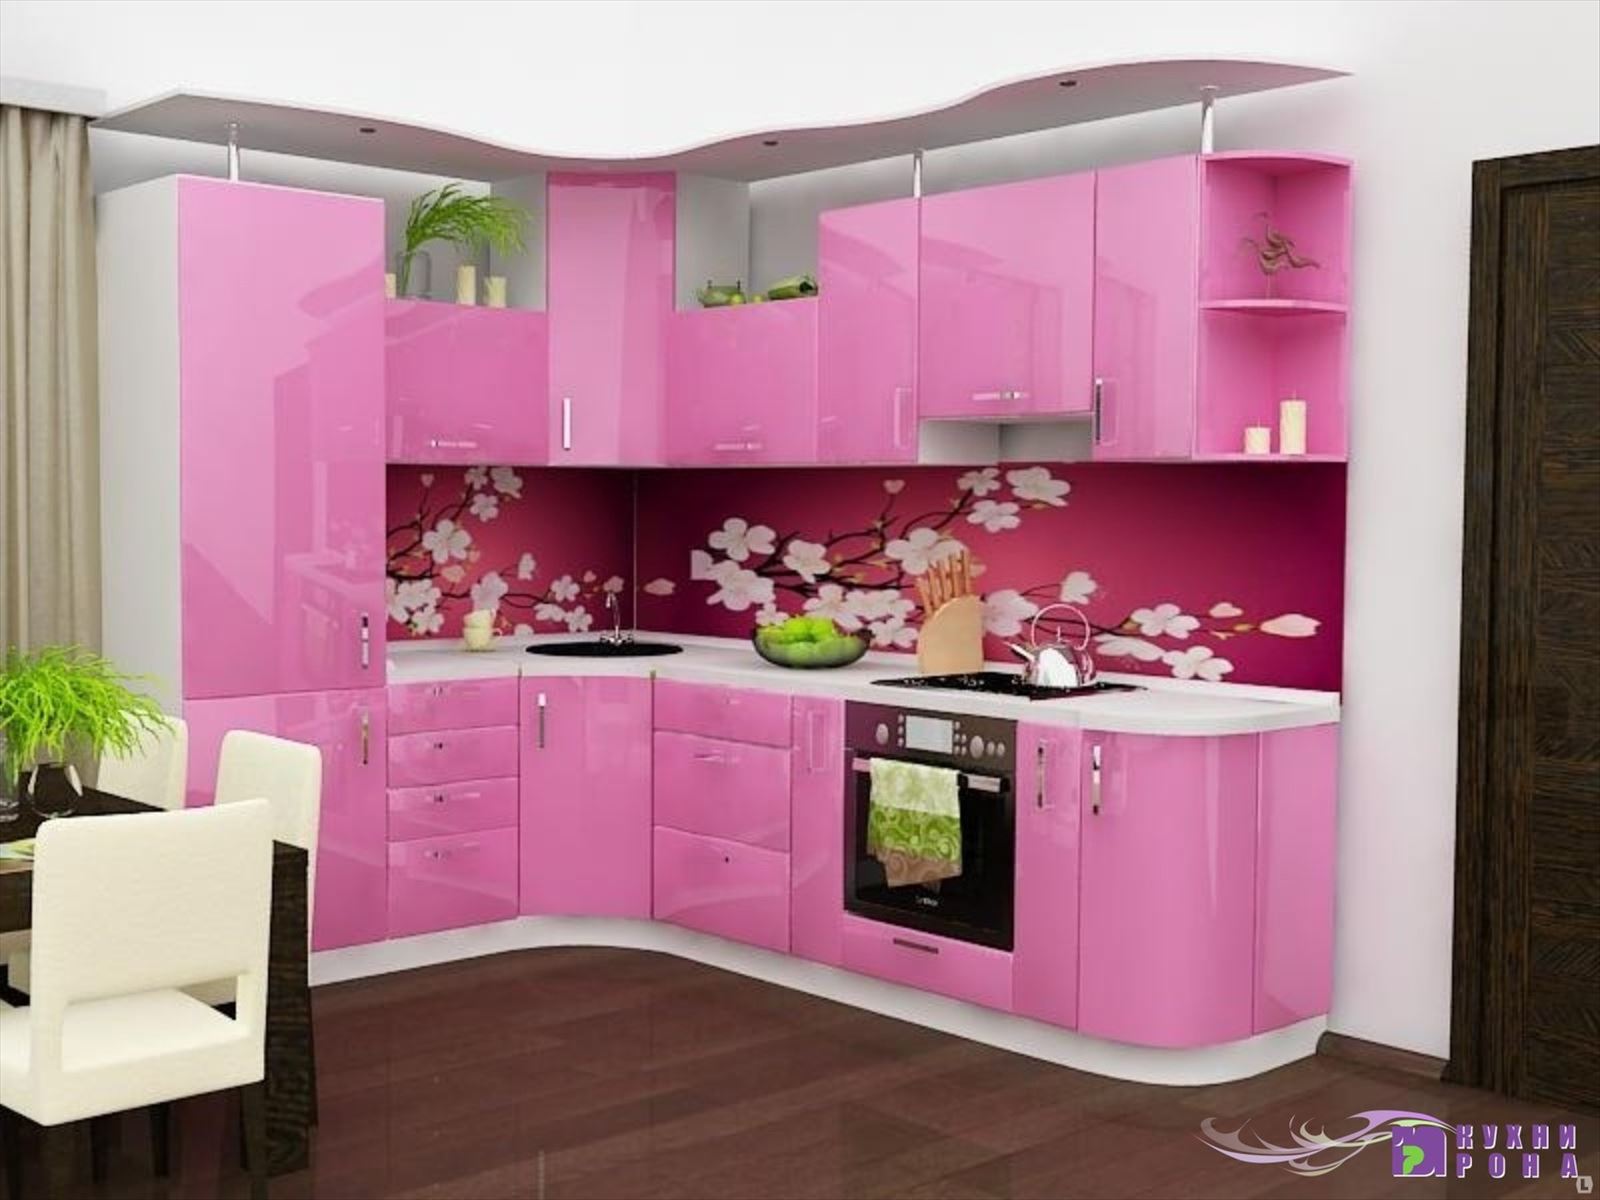 Где в екатеринбурге можно купить недорогую. Кухонные гарнитуры. Кухонный гарнитур розовый. Красивый кухонный гарнитур. Угловые кухни.